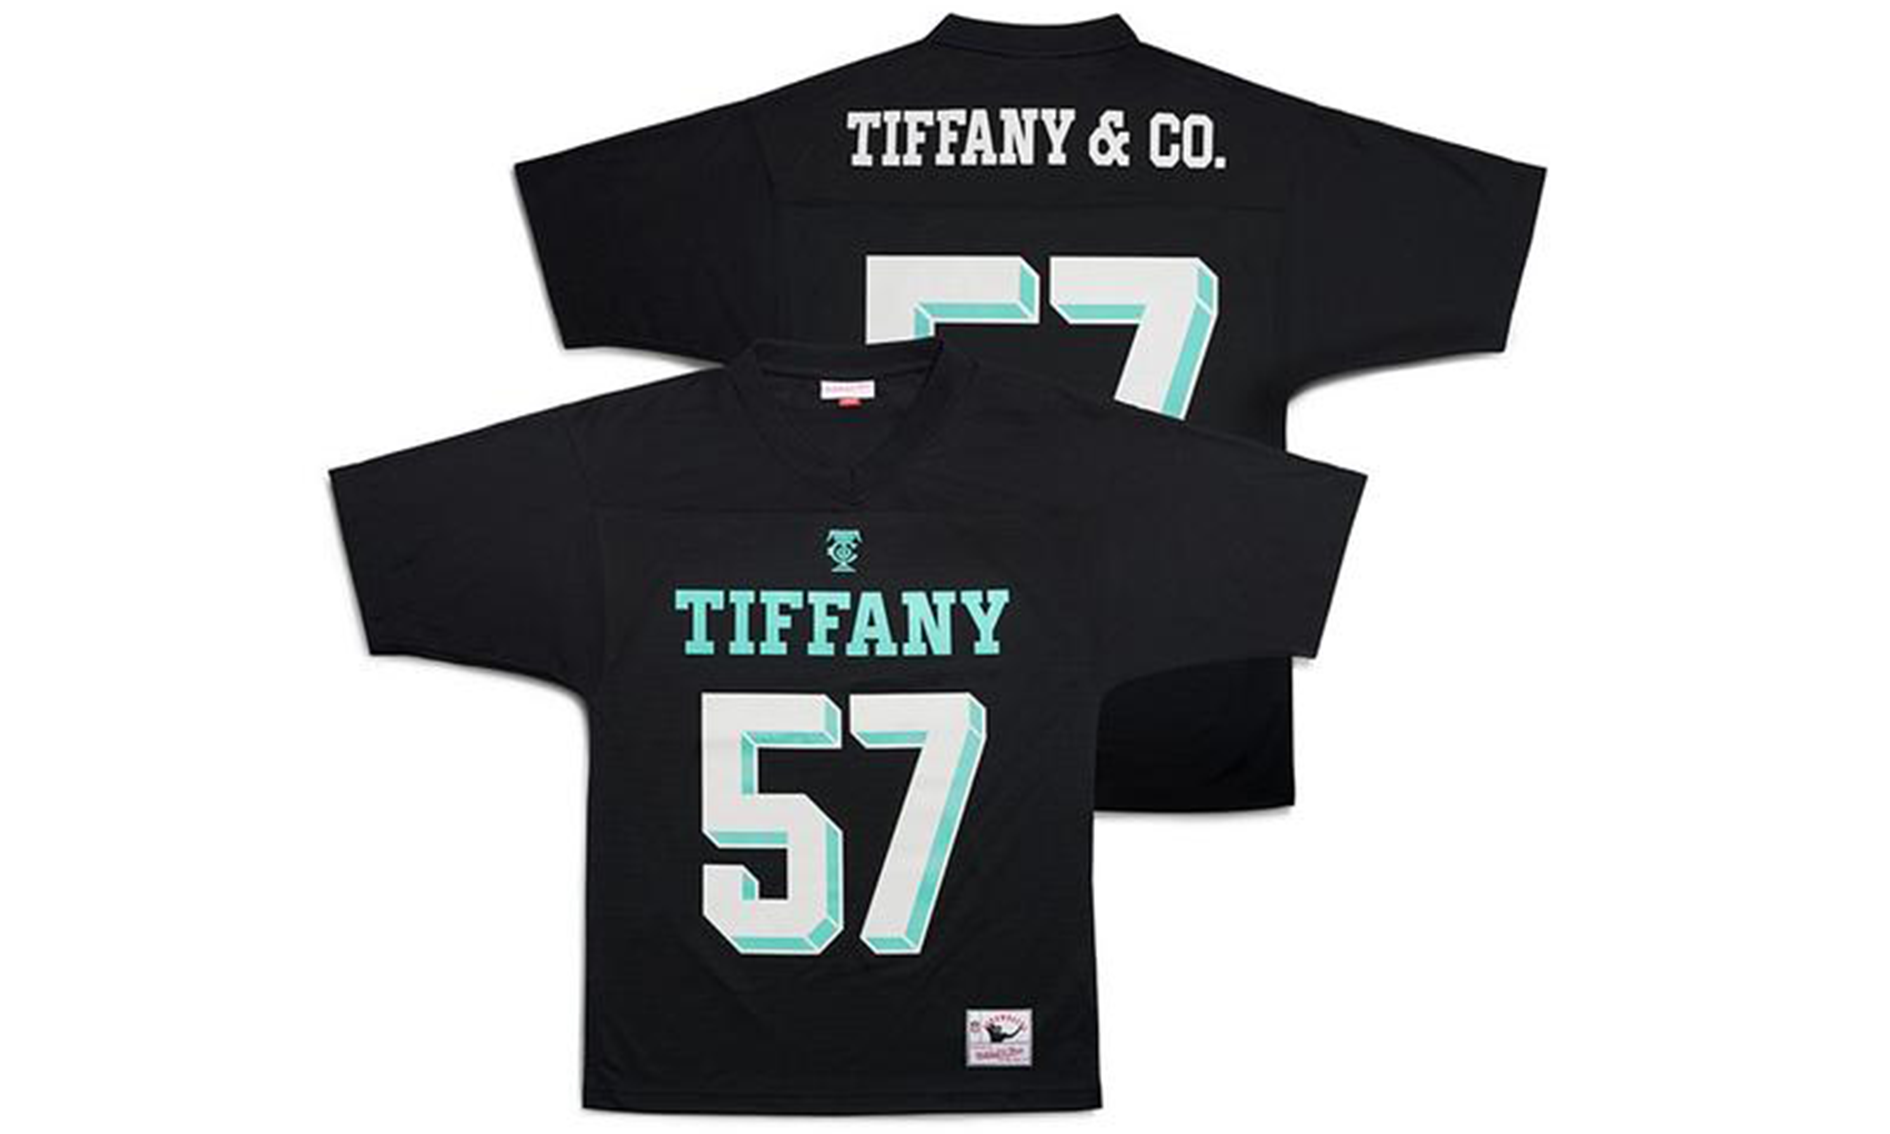 Tiffany & Co. x Mitchell & Ness 超级碗球衣登场